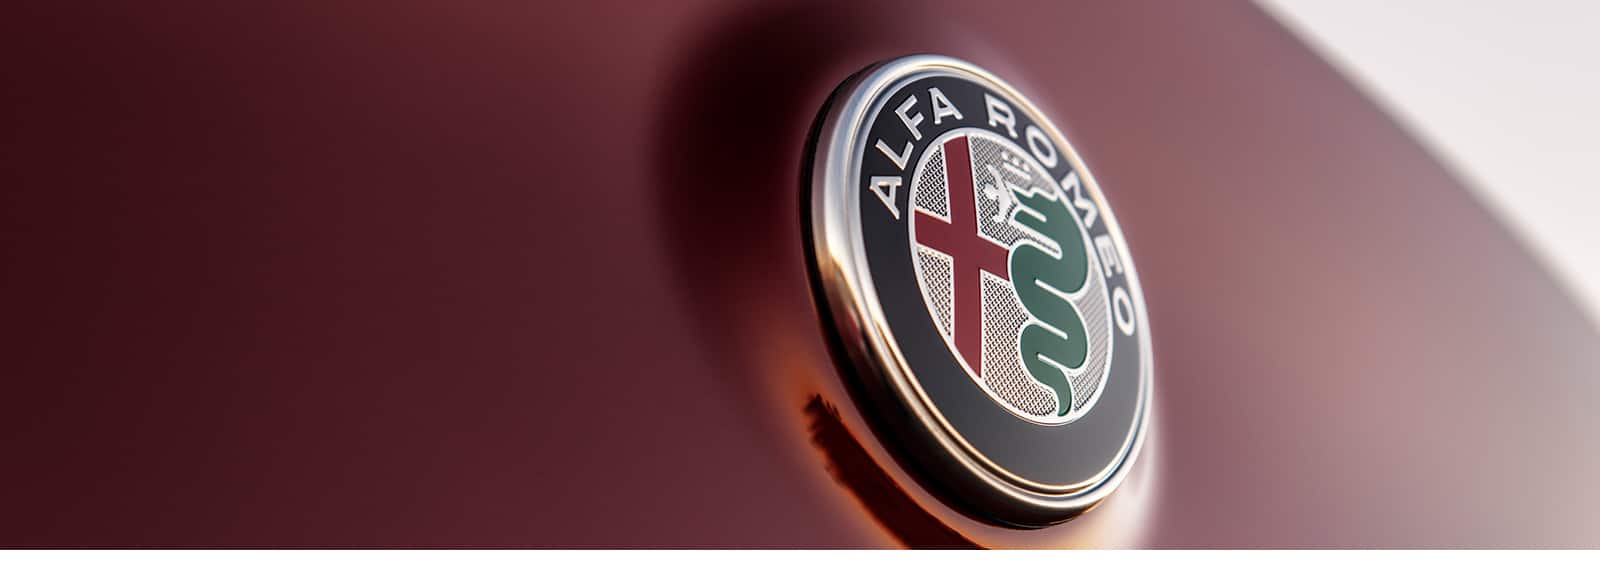 Alfa Romeo Manhattan NY